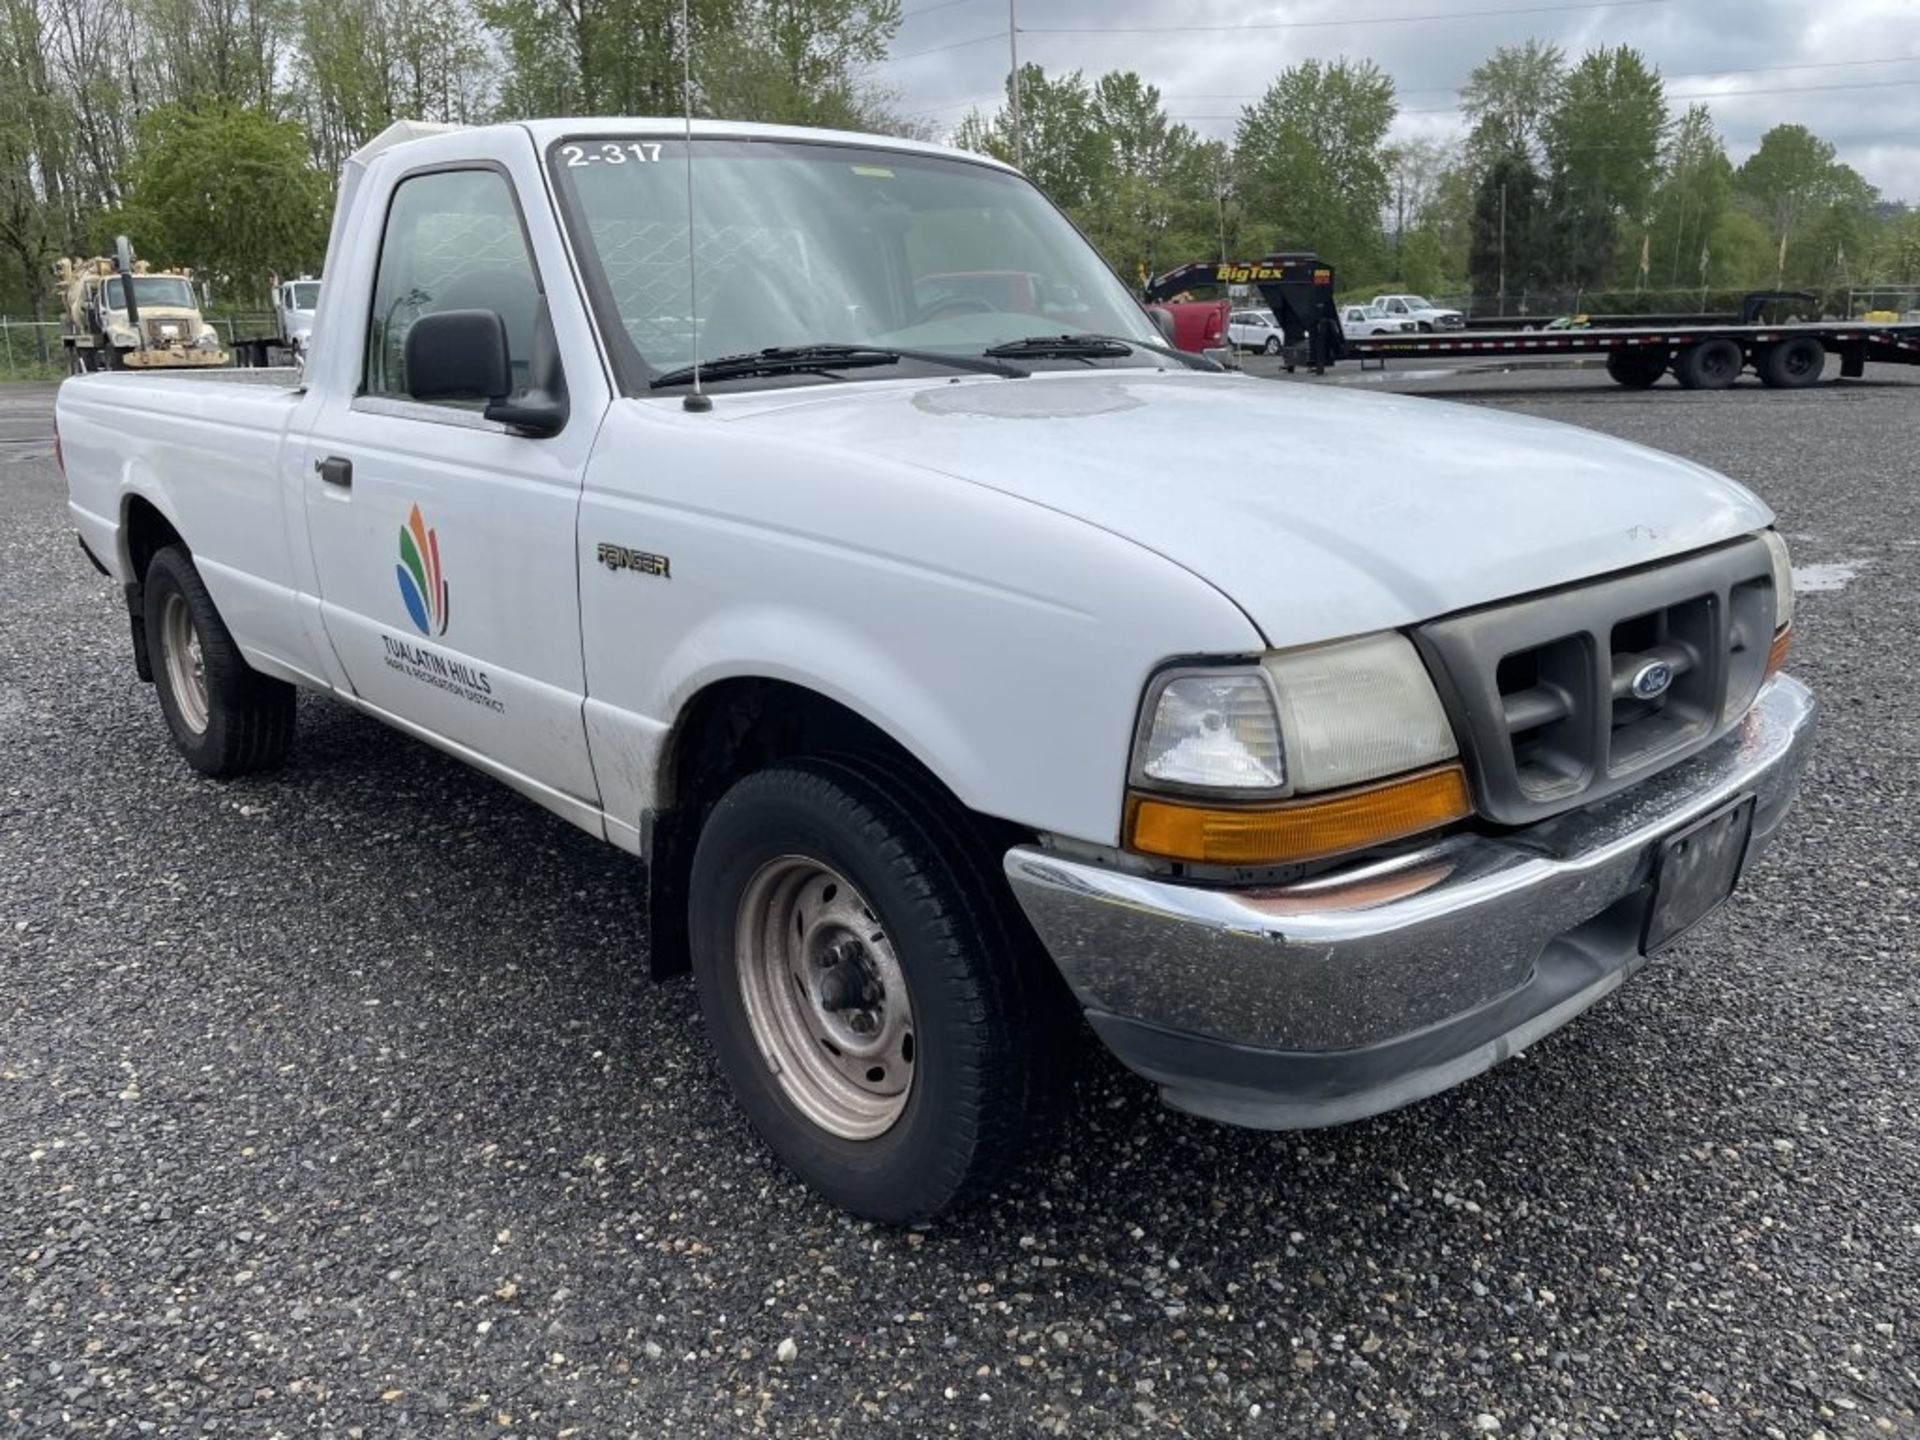 2000 Ford Ranger Pickup - Image 2 of 28